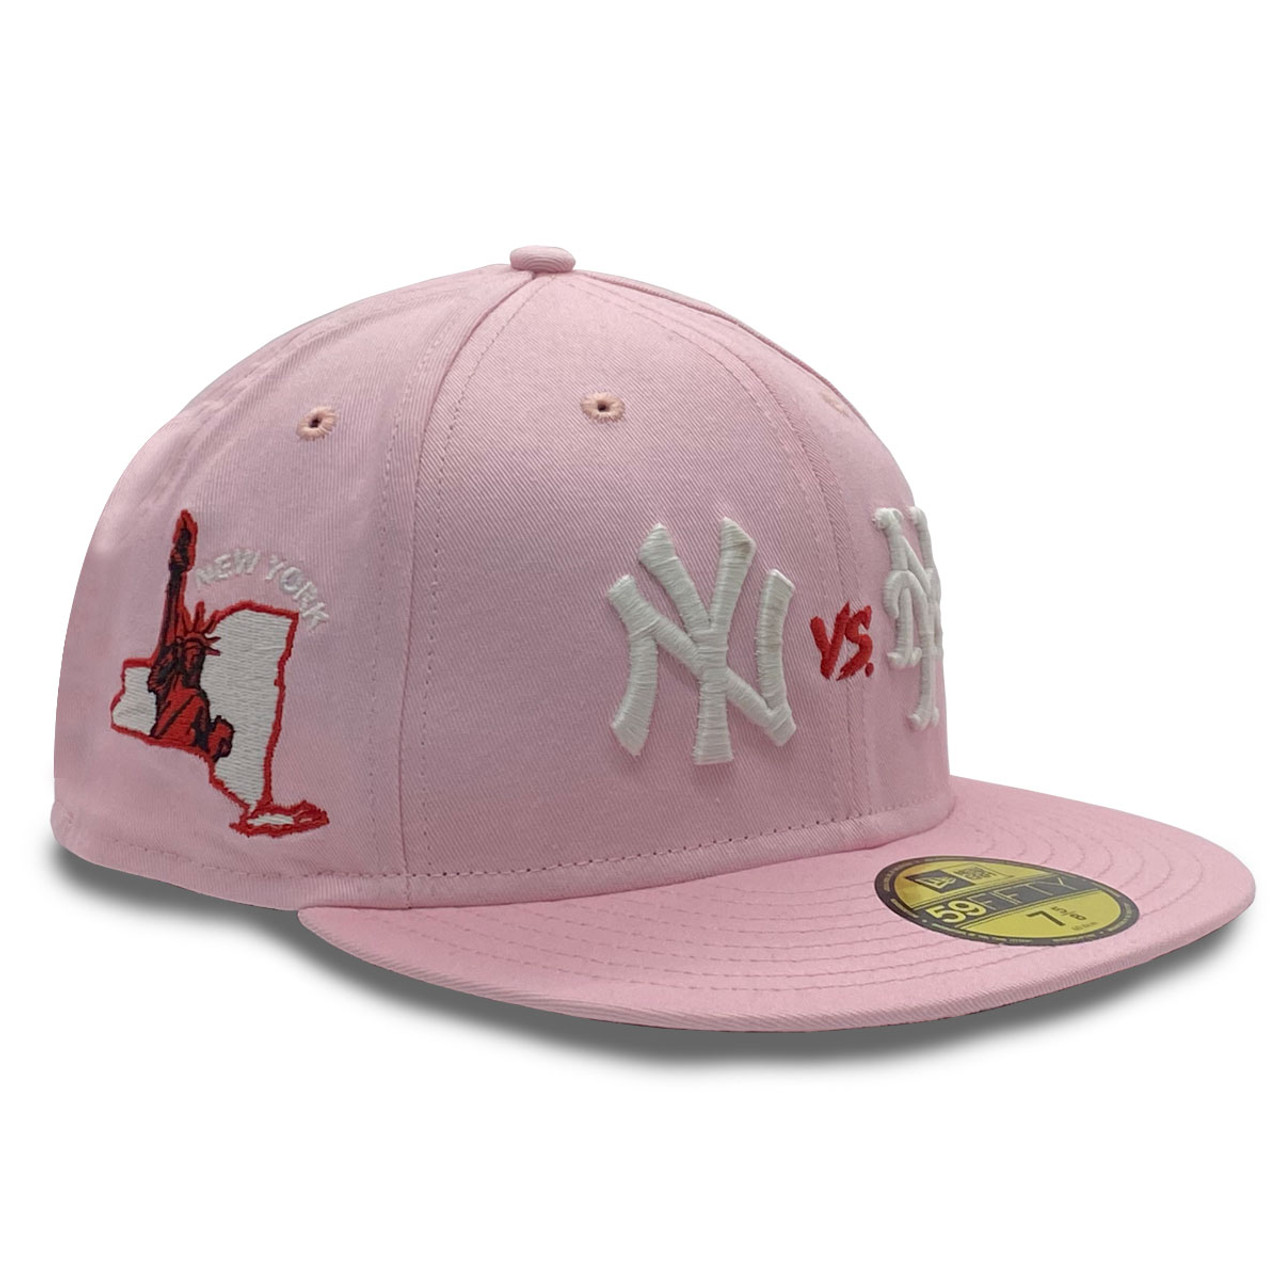 New Era Men's Caps - Pink